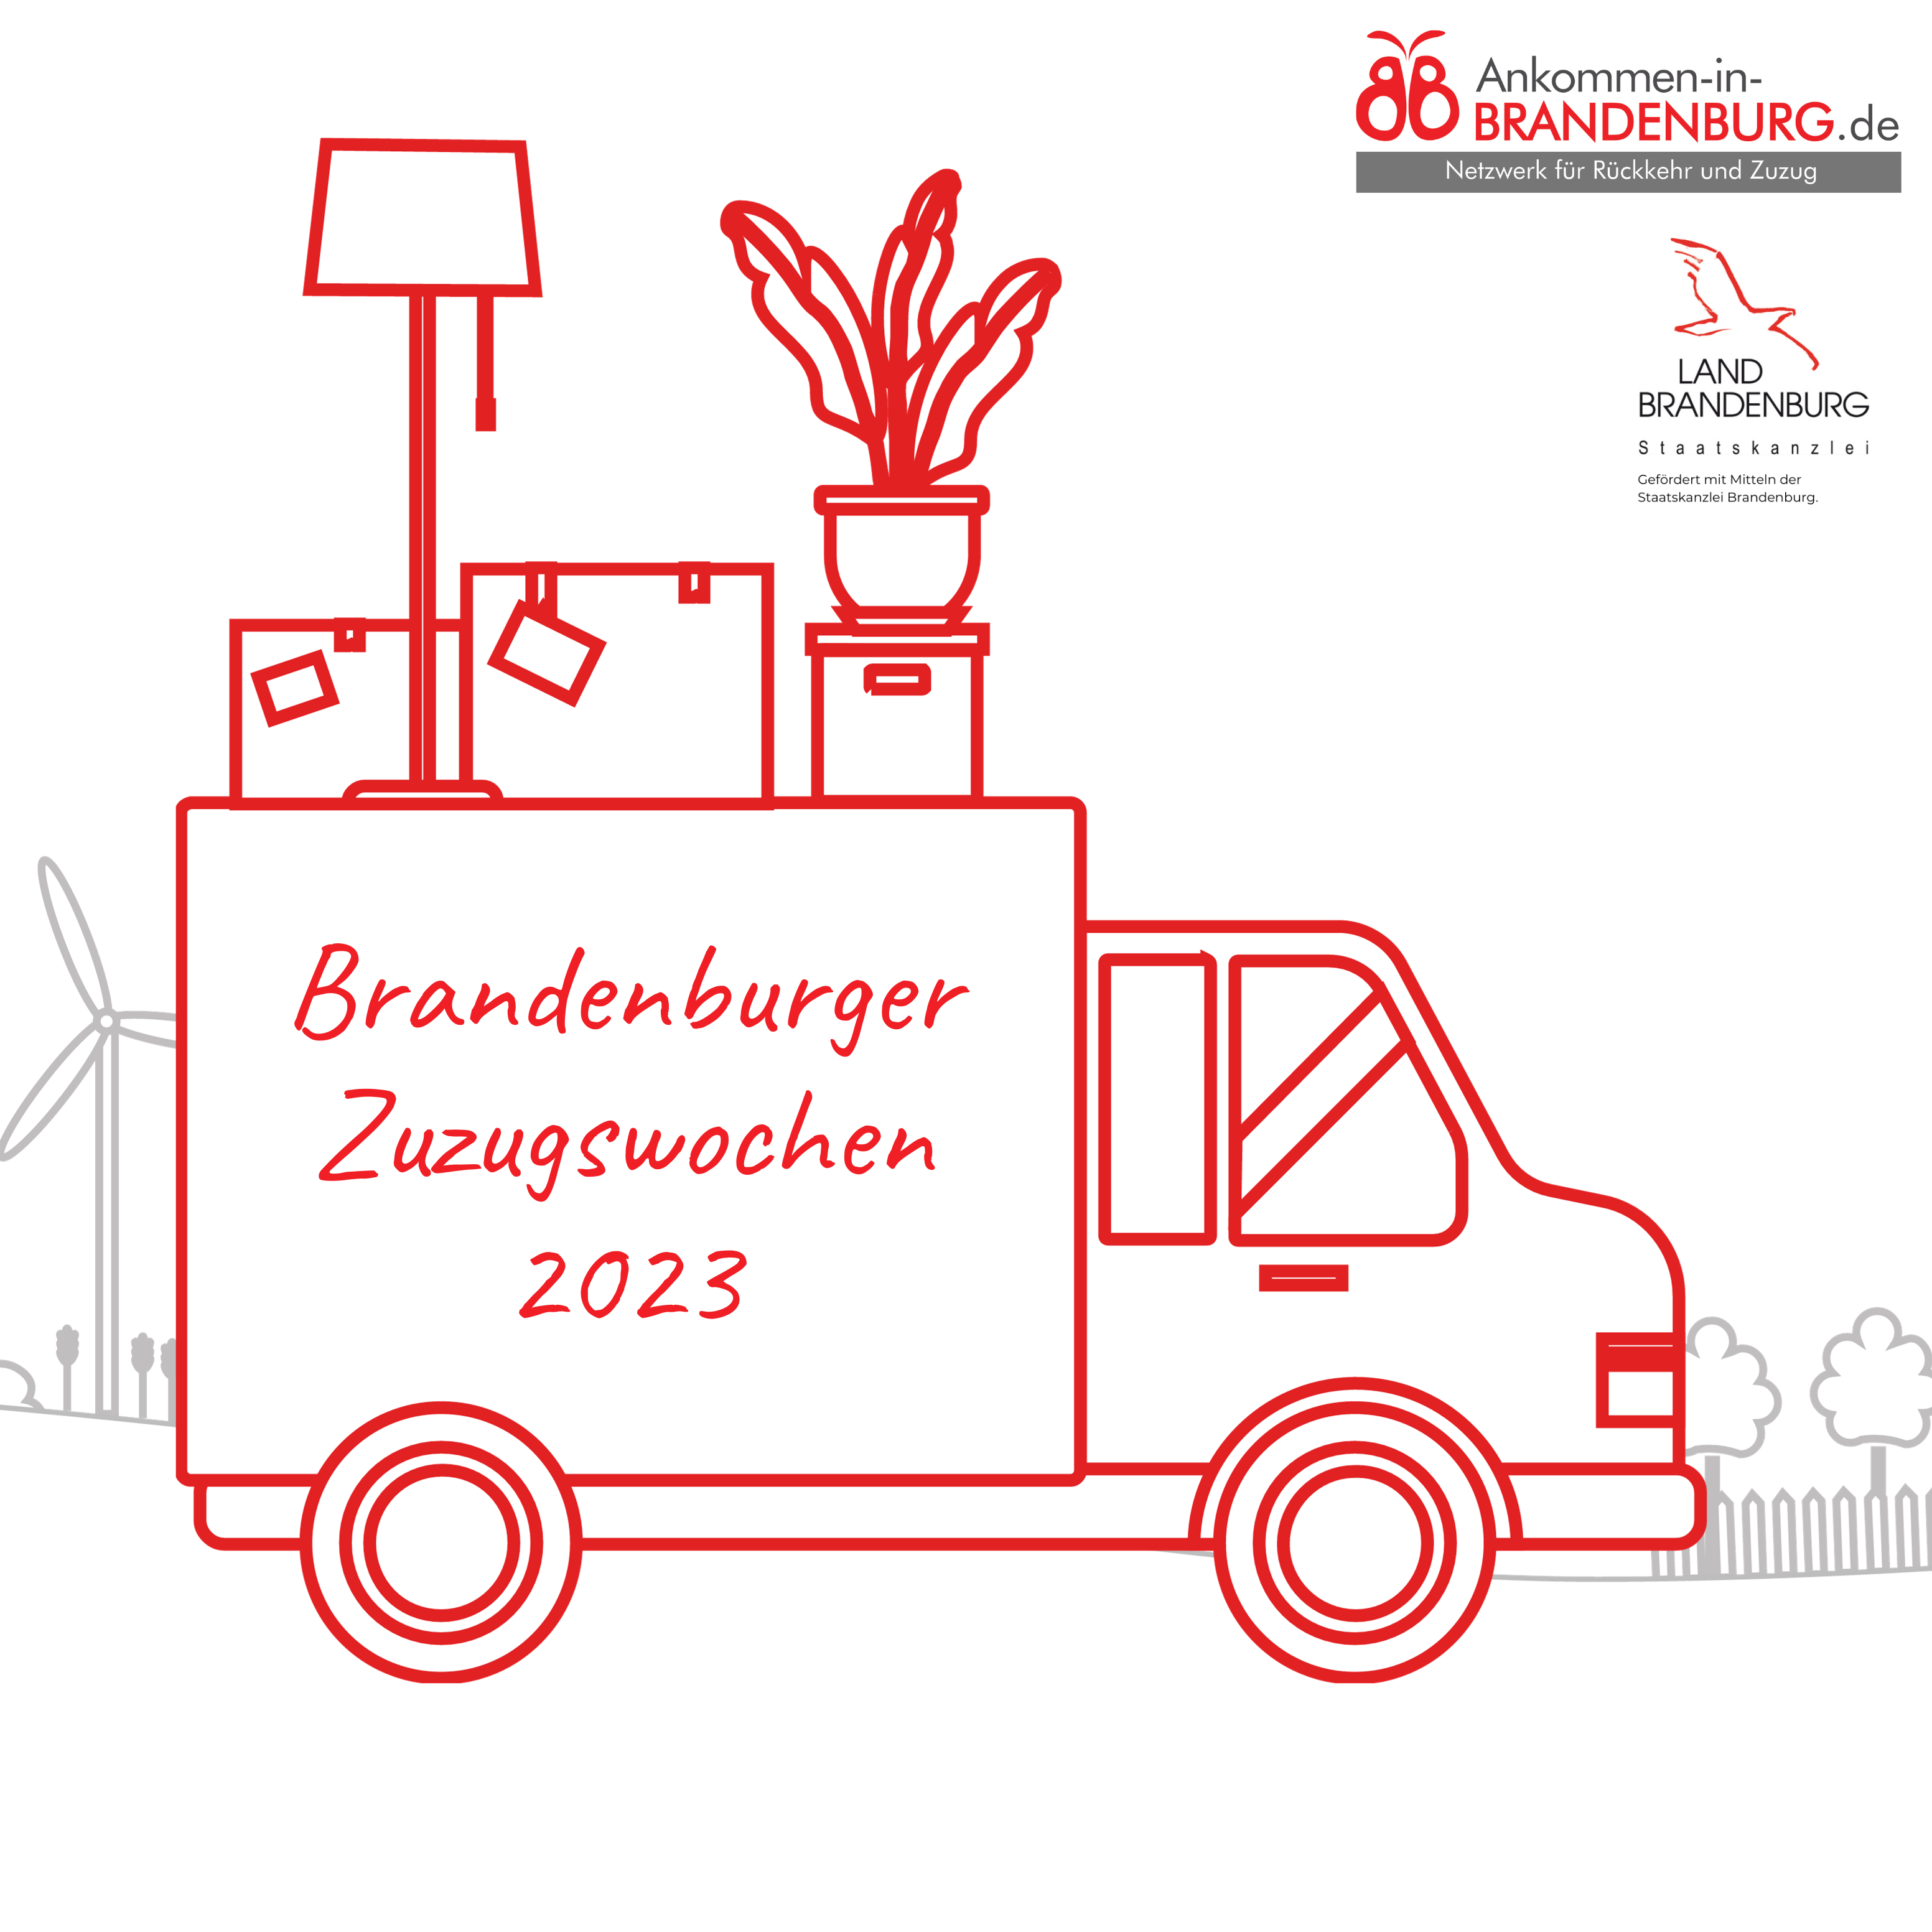 Die zweiten Brandenburger Zuzugswochen machen vom 13. bis 26. November 2023 auf den ländlichen Raum als attraktiven Lebensort aufmerksam